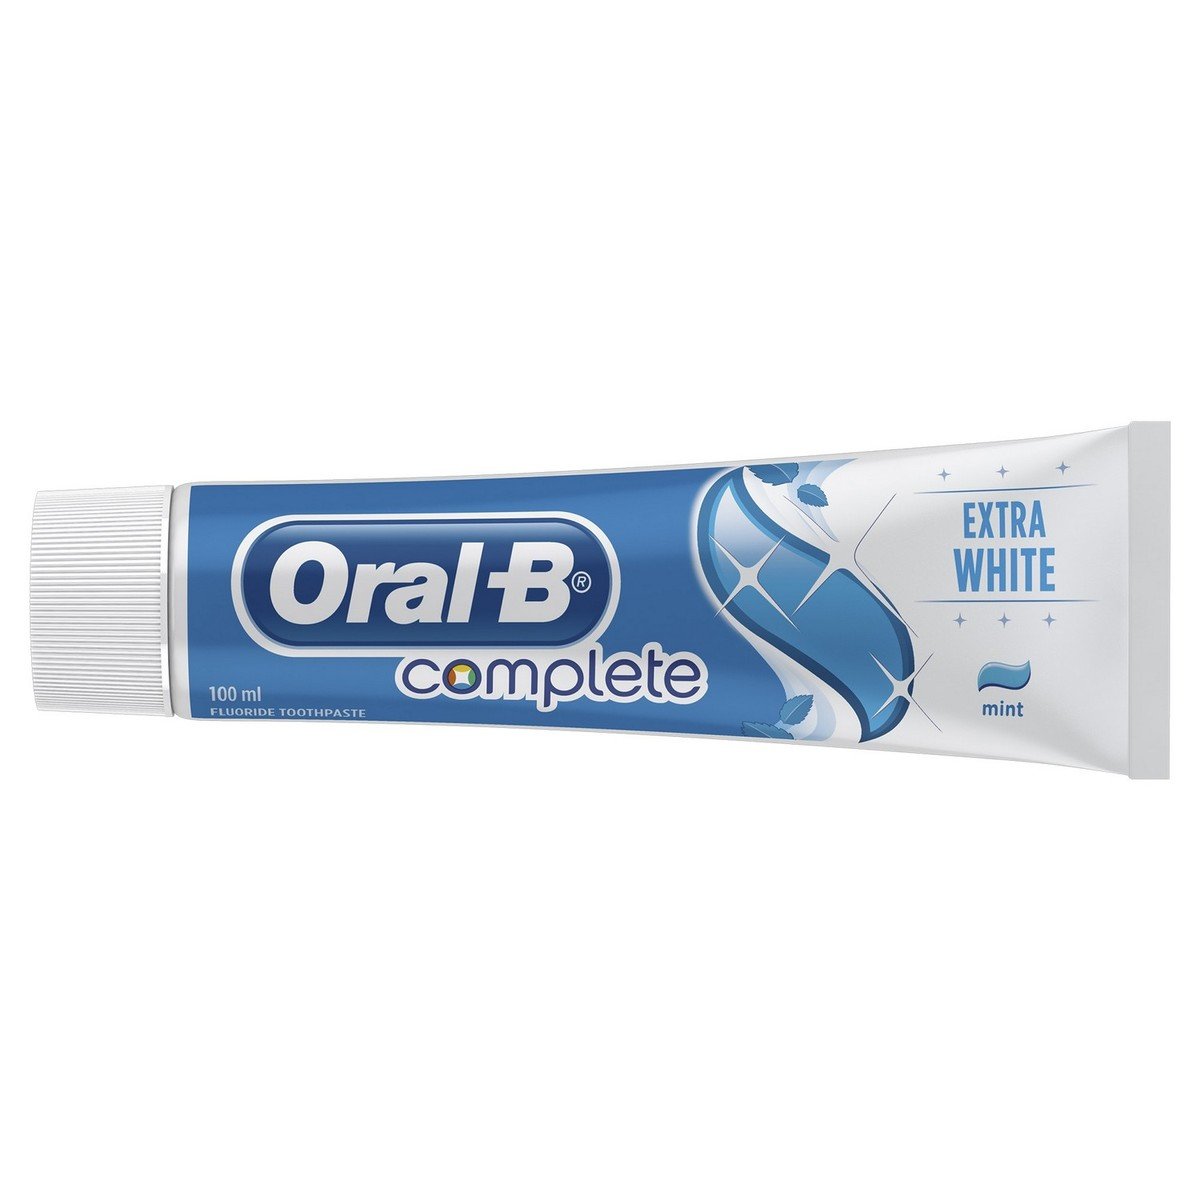 أورال-بي معجون أسنان المتكامل اكسترا وايت 100 مل